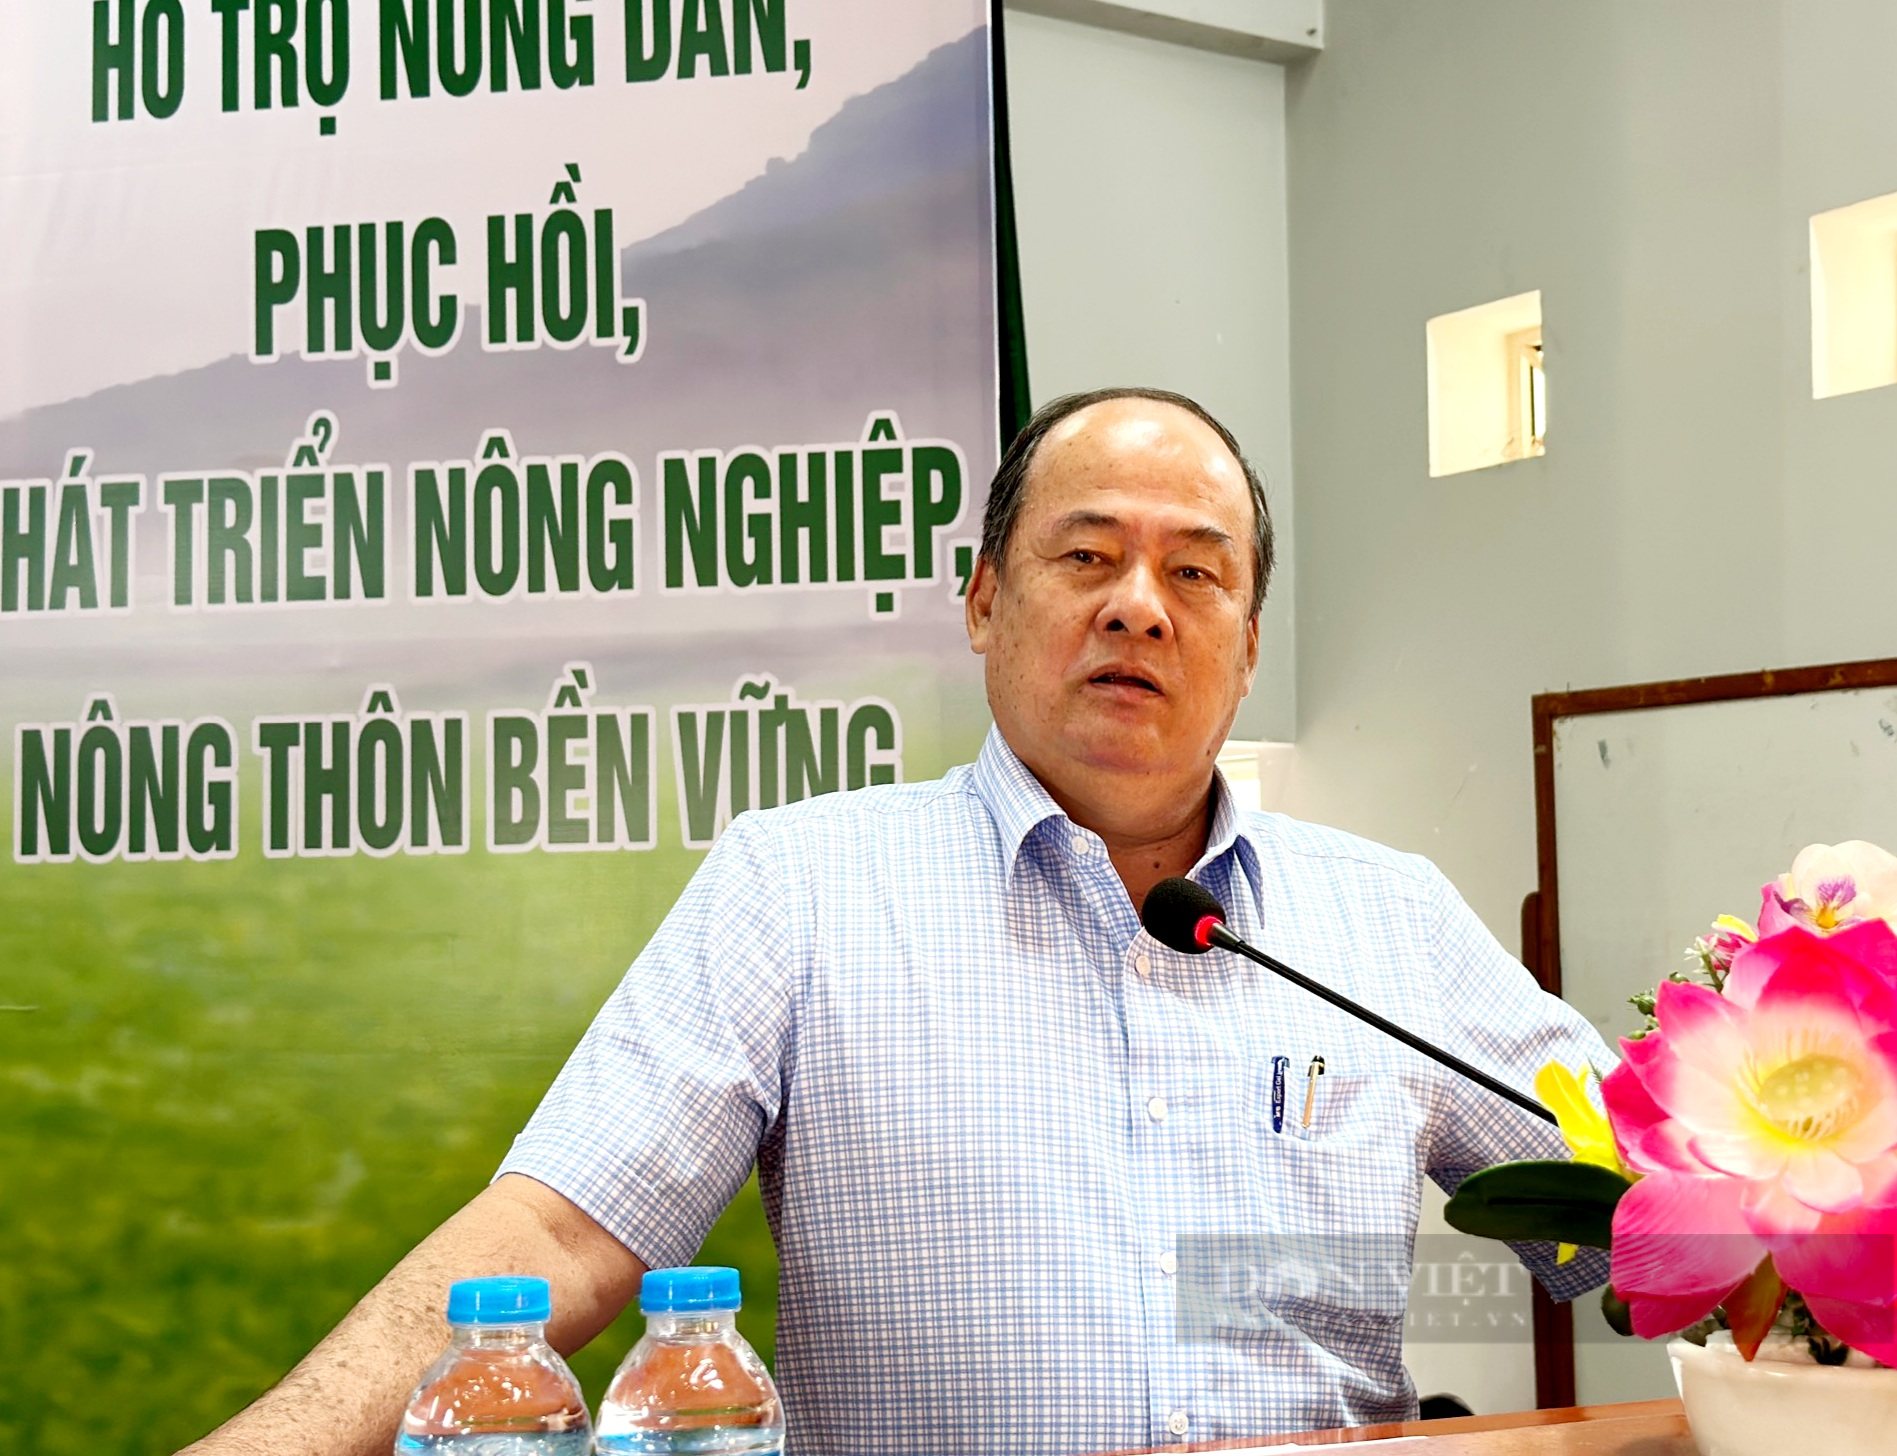 Đối thoại với nông dân, Chủ tịch UBND tỉnh An Giang đề nghị nông dân tham gia vào các mô hình kinh tế hợp tác - Ảnh 4.